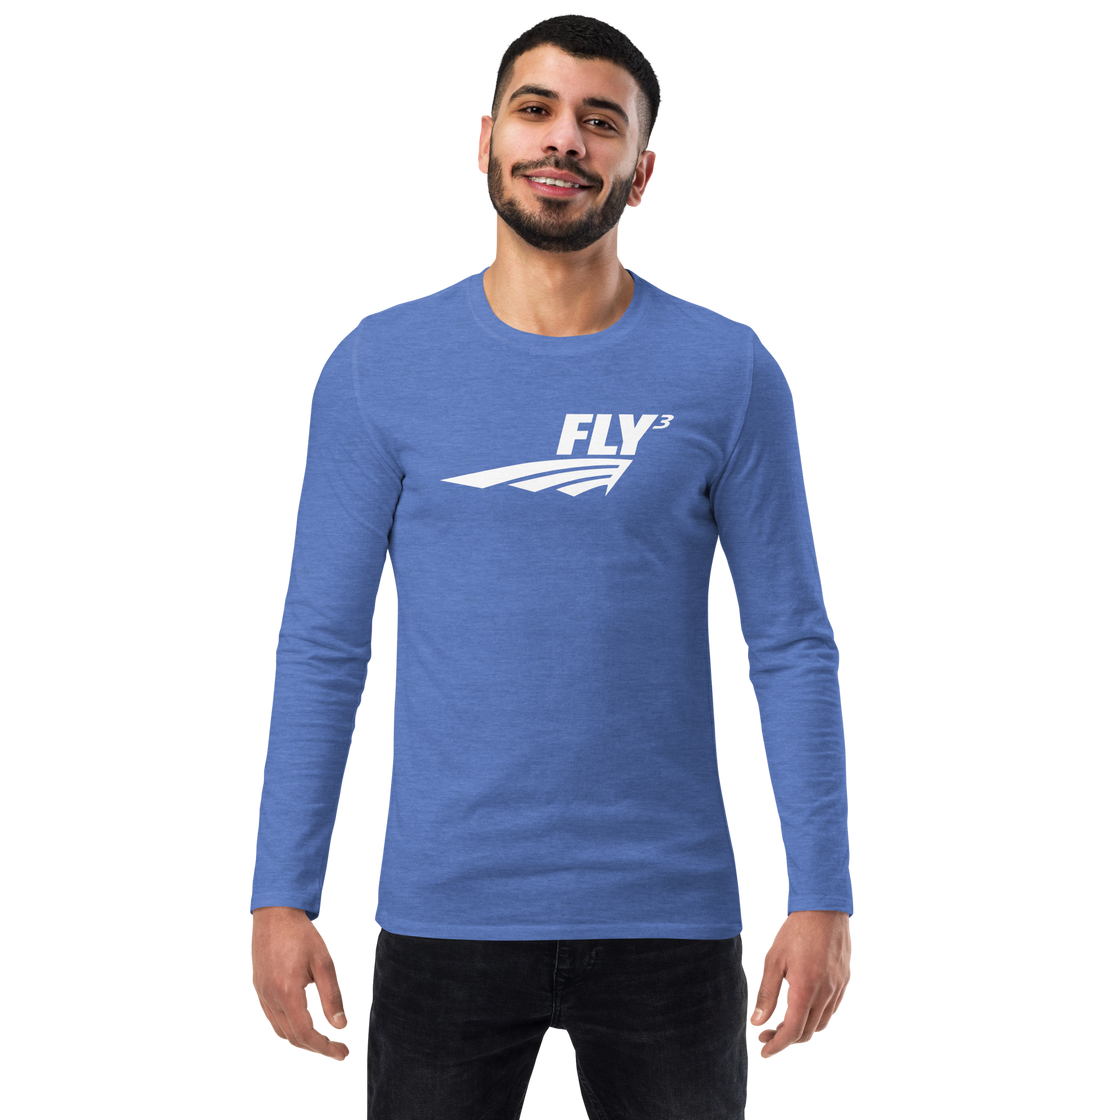 FLY³ long sleeve shirt | Flycube